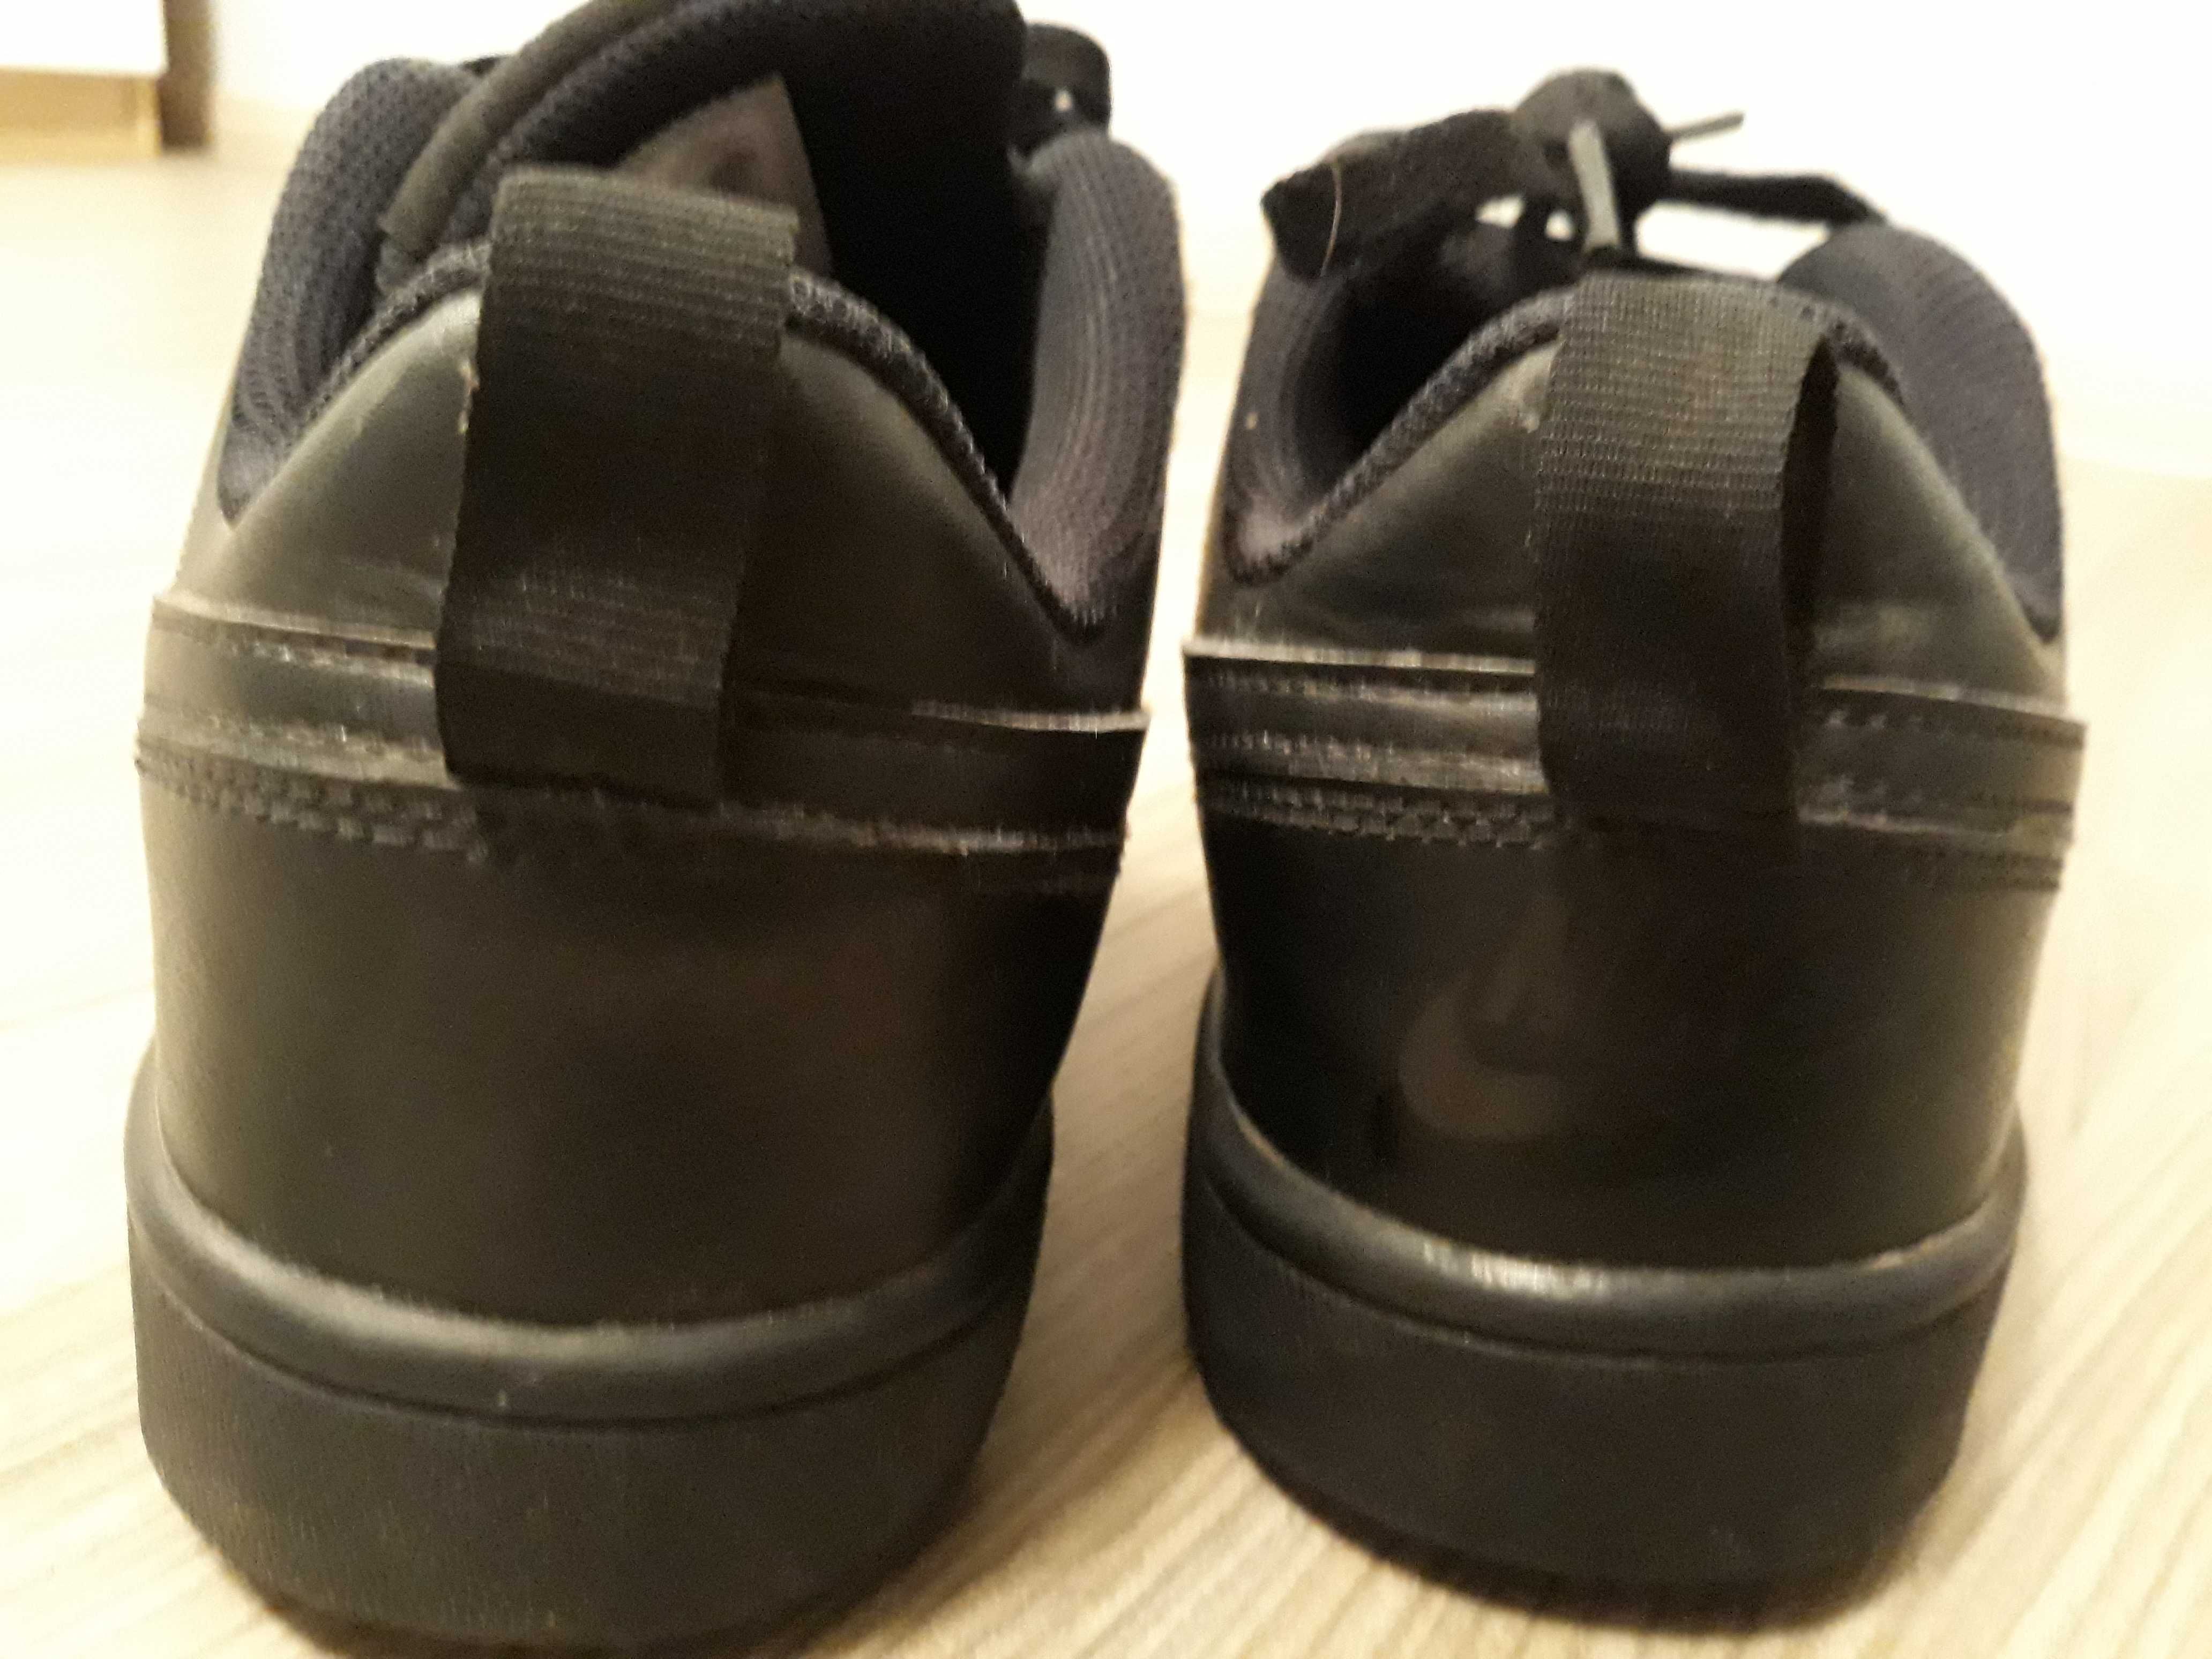 Buty Nike czarne klasyczne skórka rozm.38 dł wkładki 24 cm.